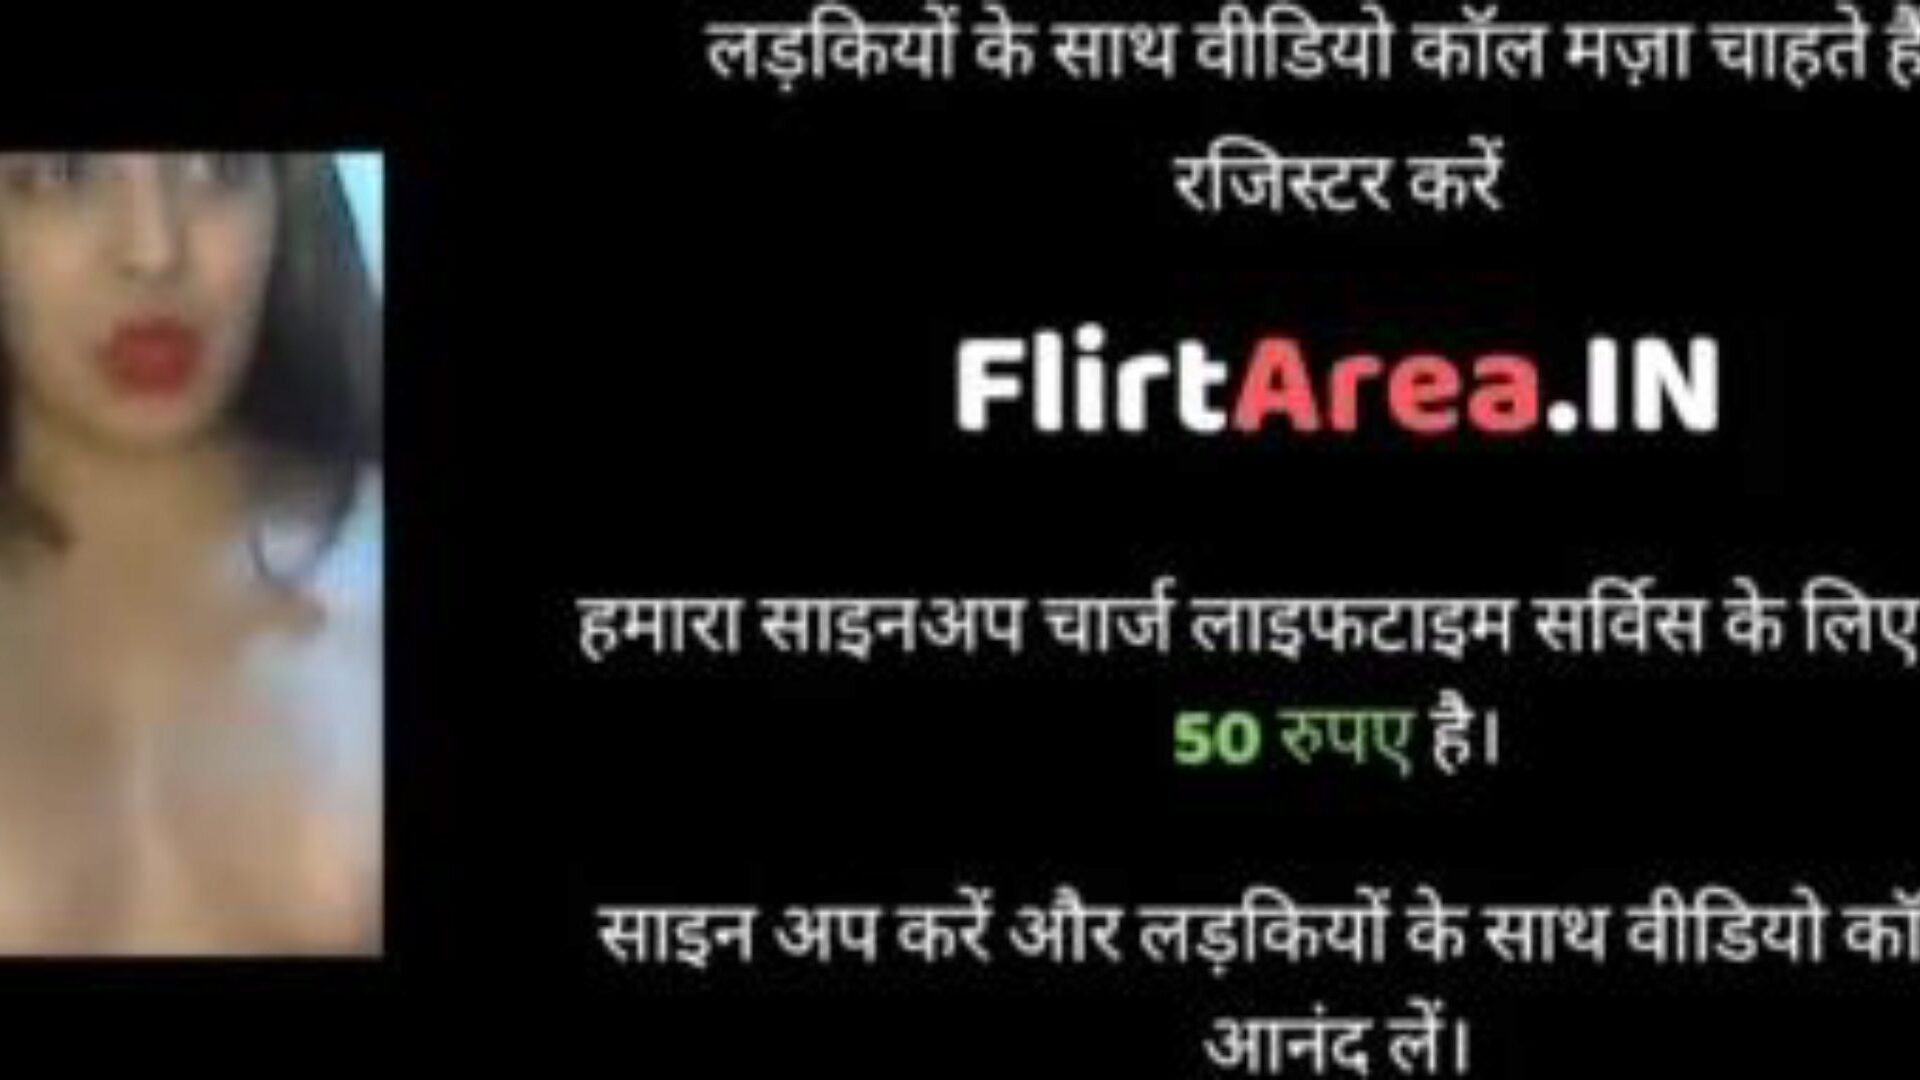 indiase hete sexy meid heeft seks met bezorger: porno e2 bekijk indiase hete sexy meid heeft seks met bezorger aflevering op xhamster - de ultieme database van gratis Aziatische volwassen xxx pornografie buis afleveringen